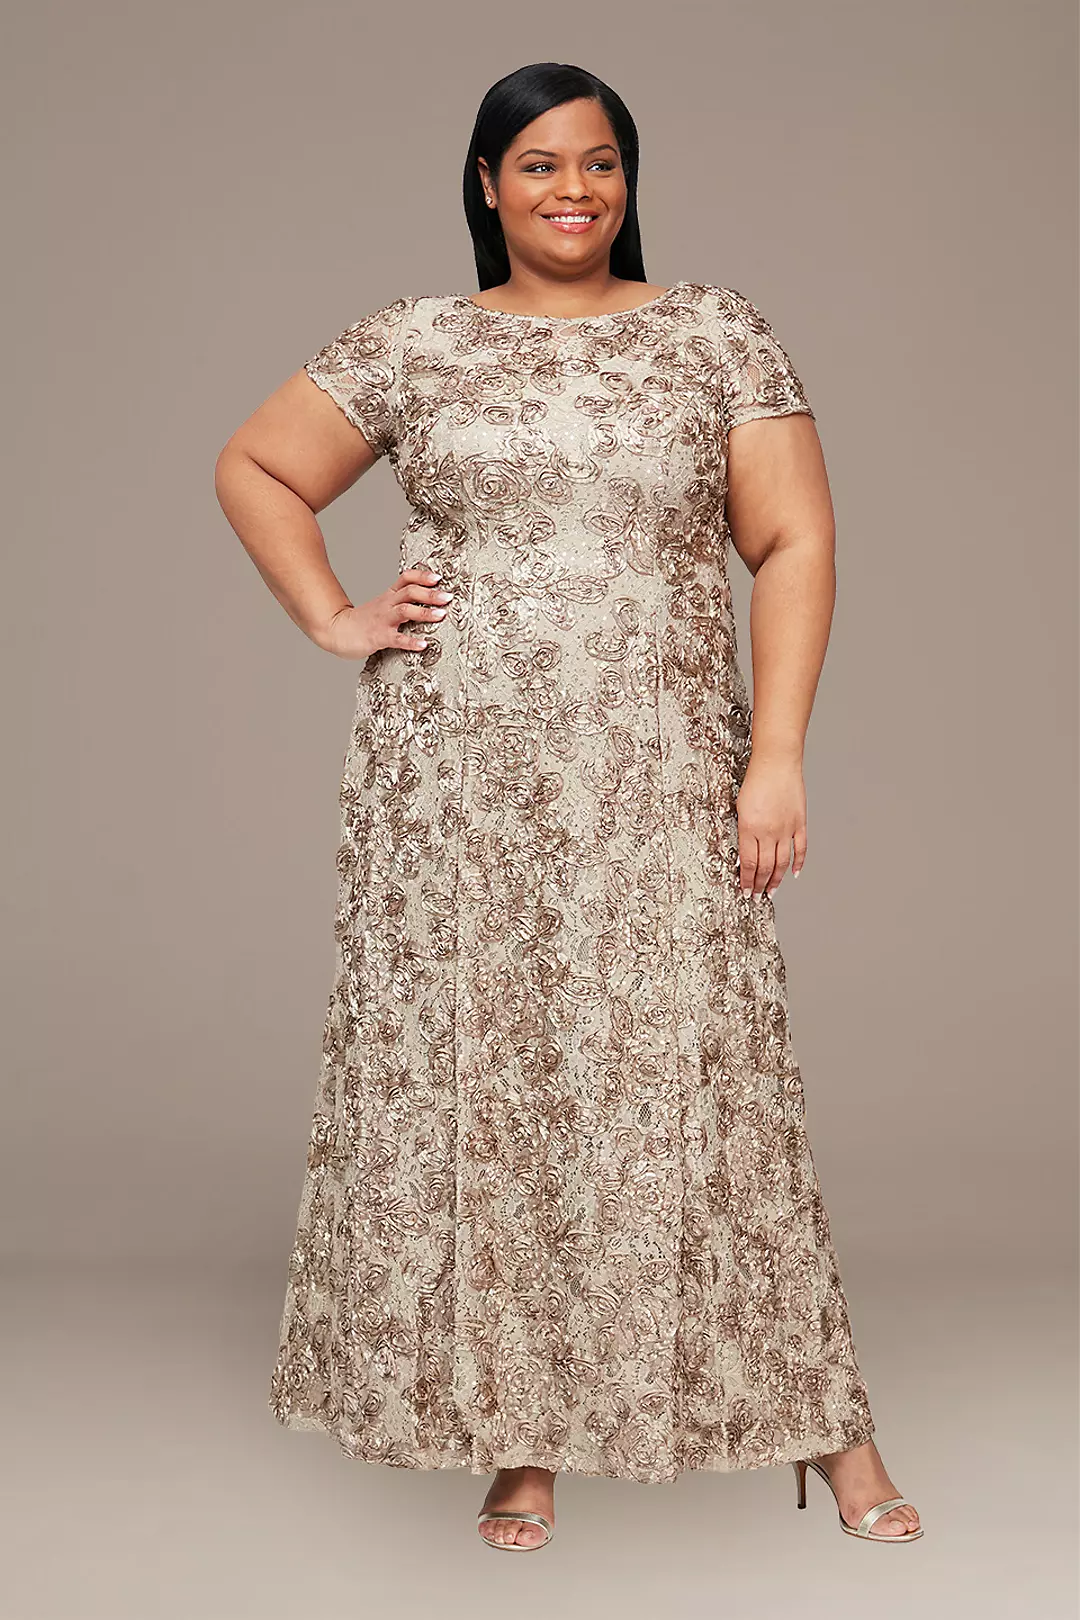 Rosette Lace Cap Sleeve A-Line Plus Size Gown Image 1